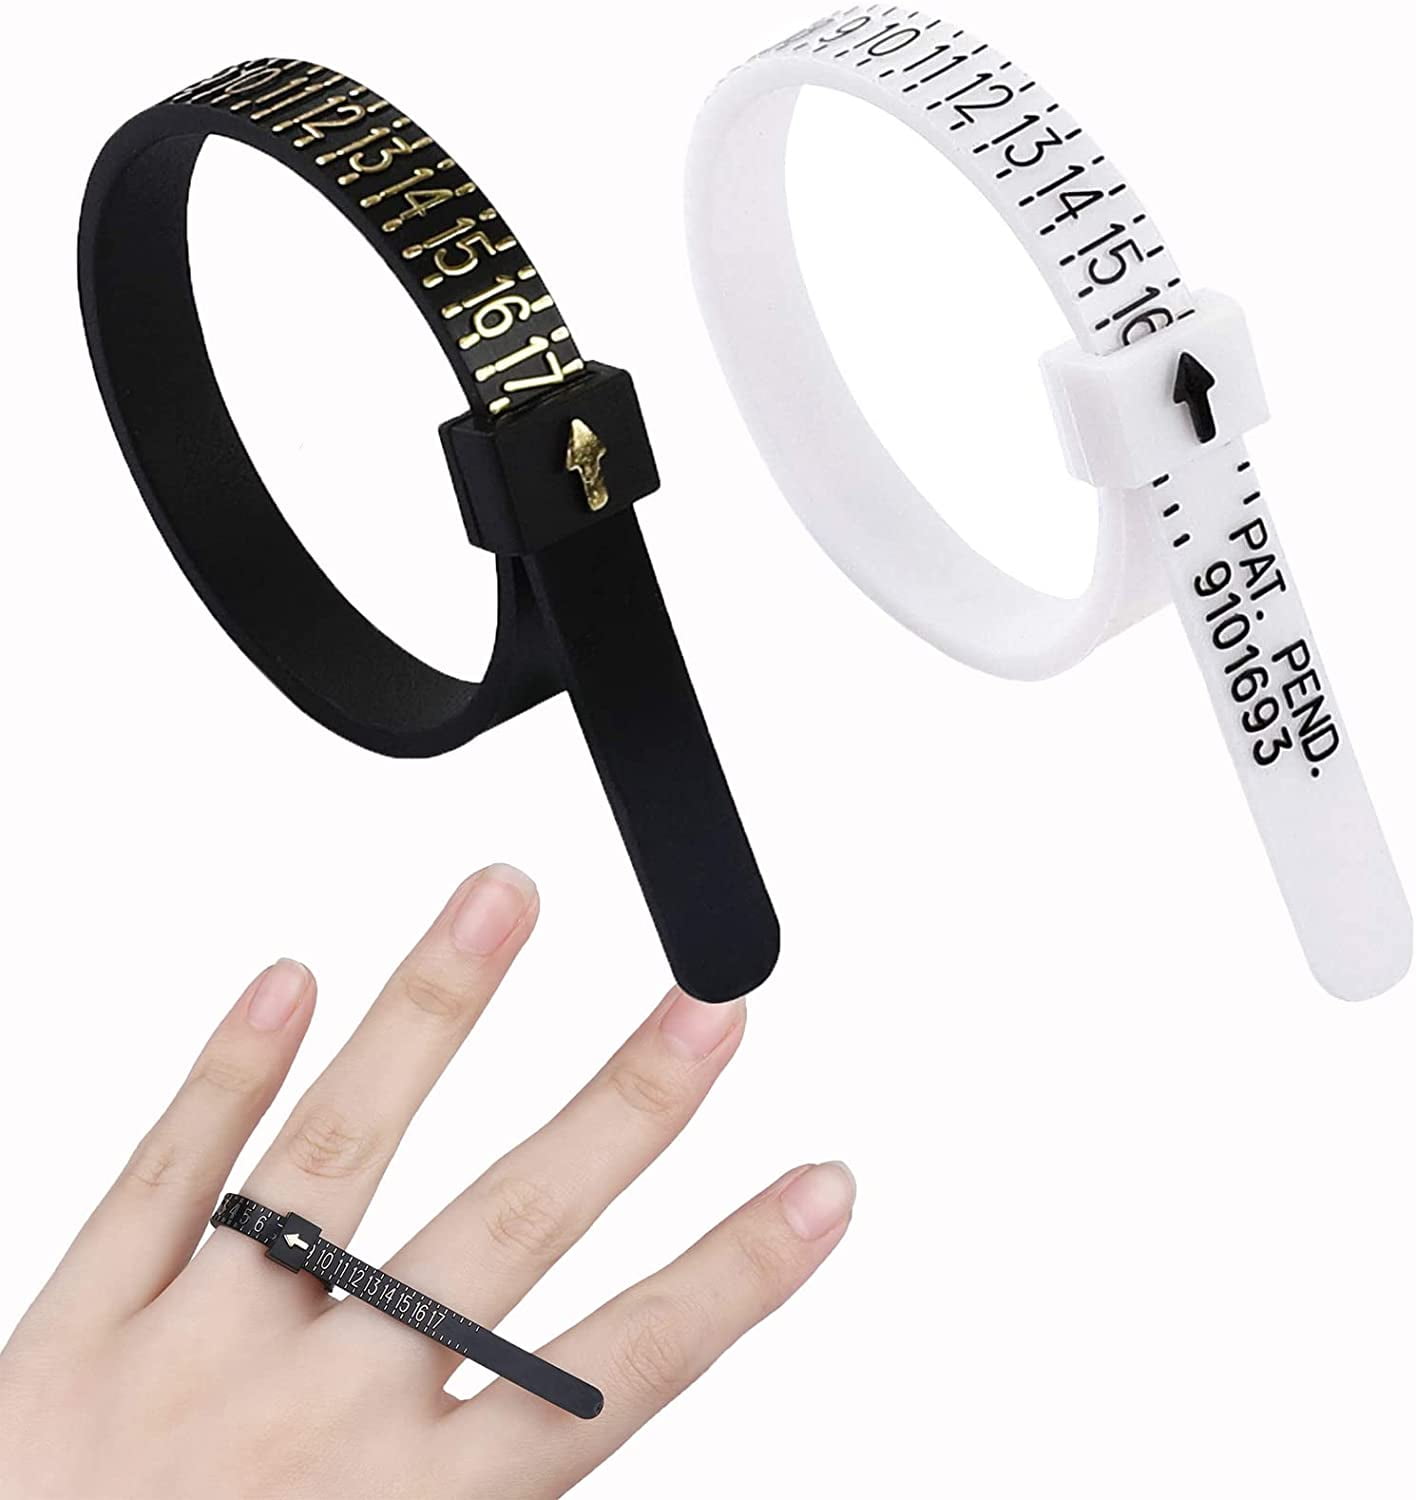 2 Pcs Ring Sizer Measuring Tool Reusable Finger Size Measuring Set